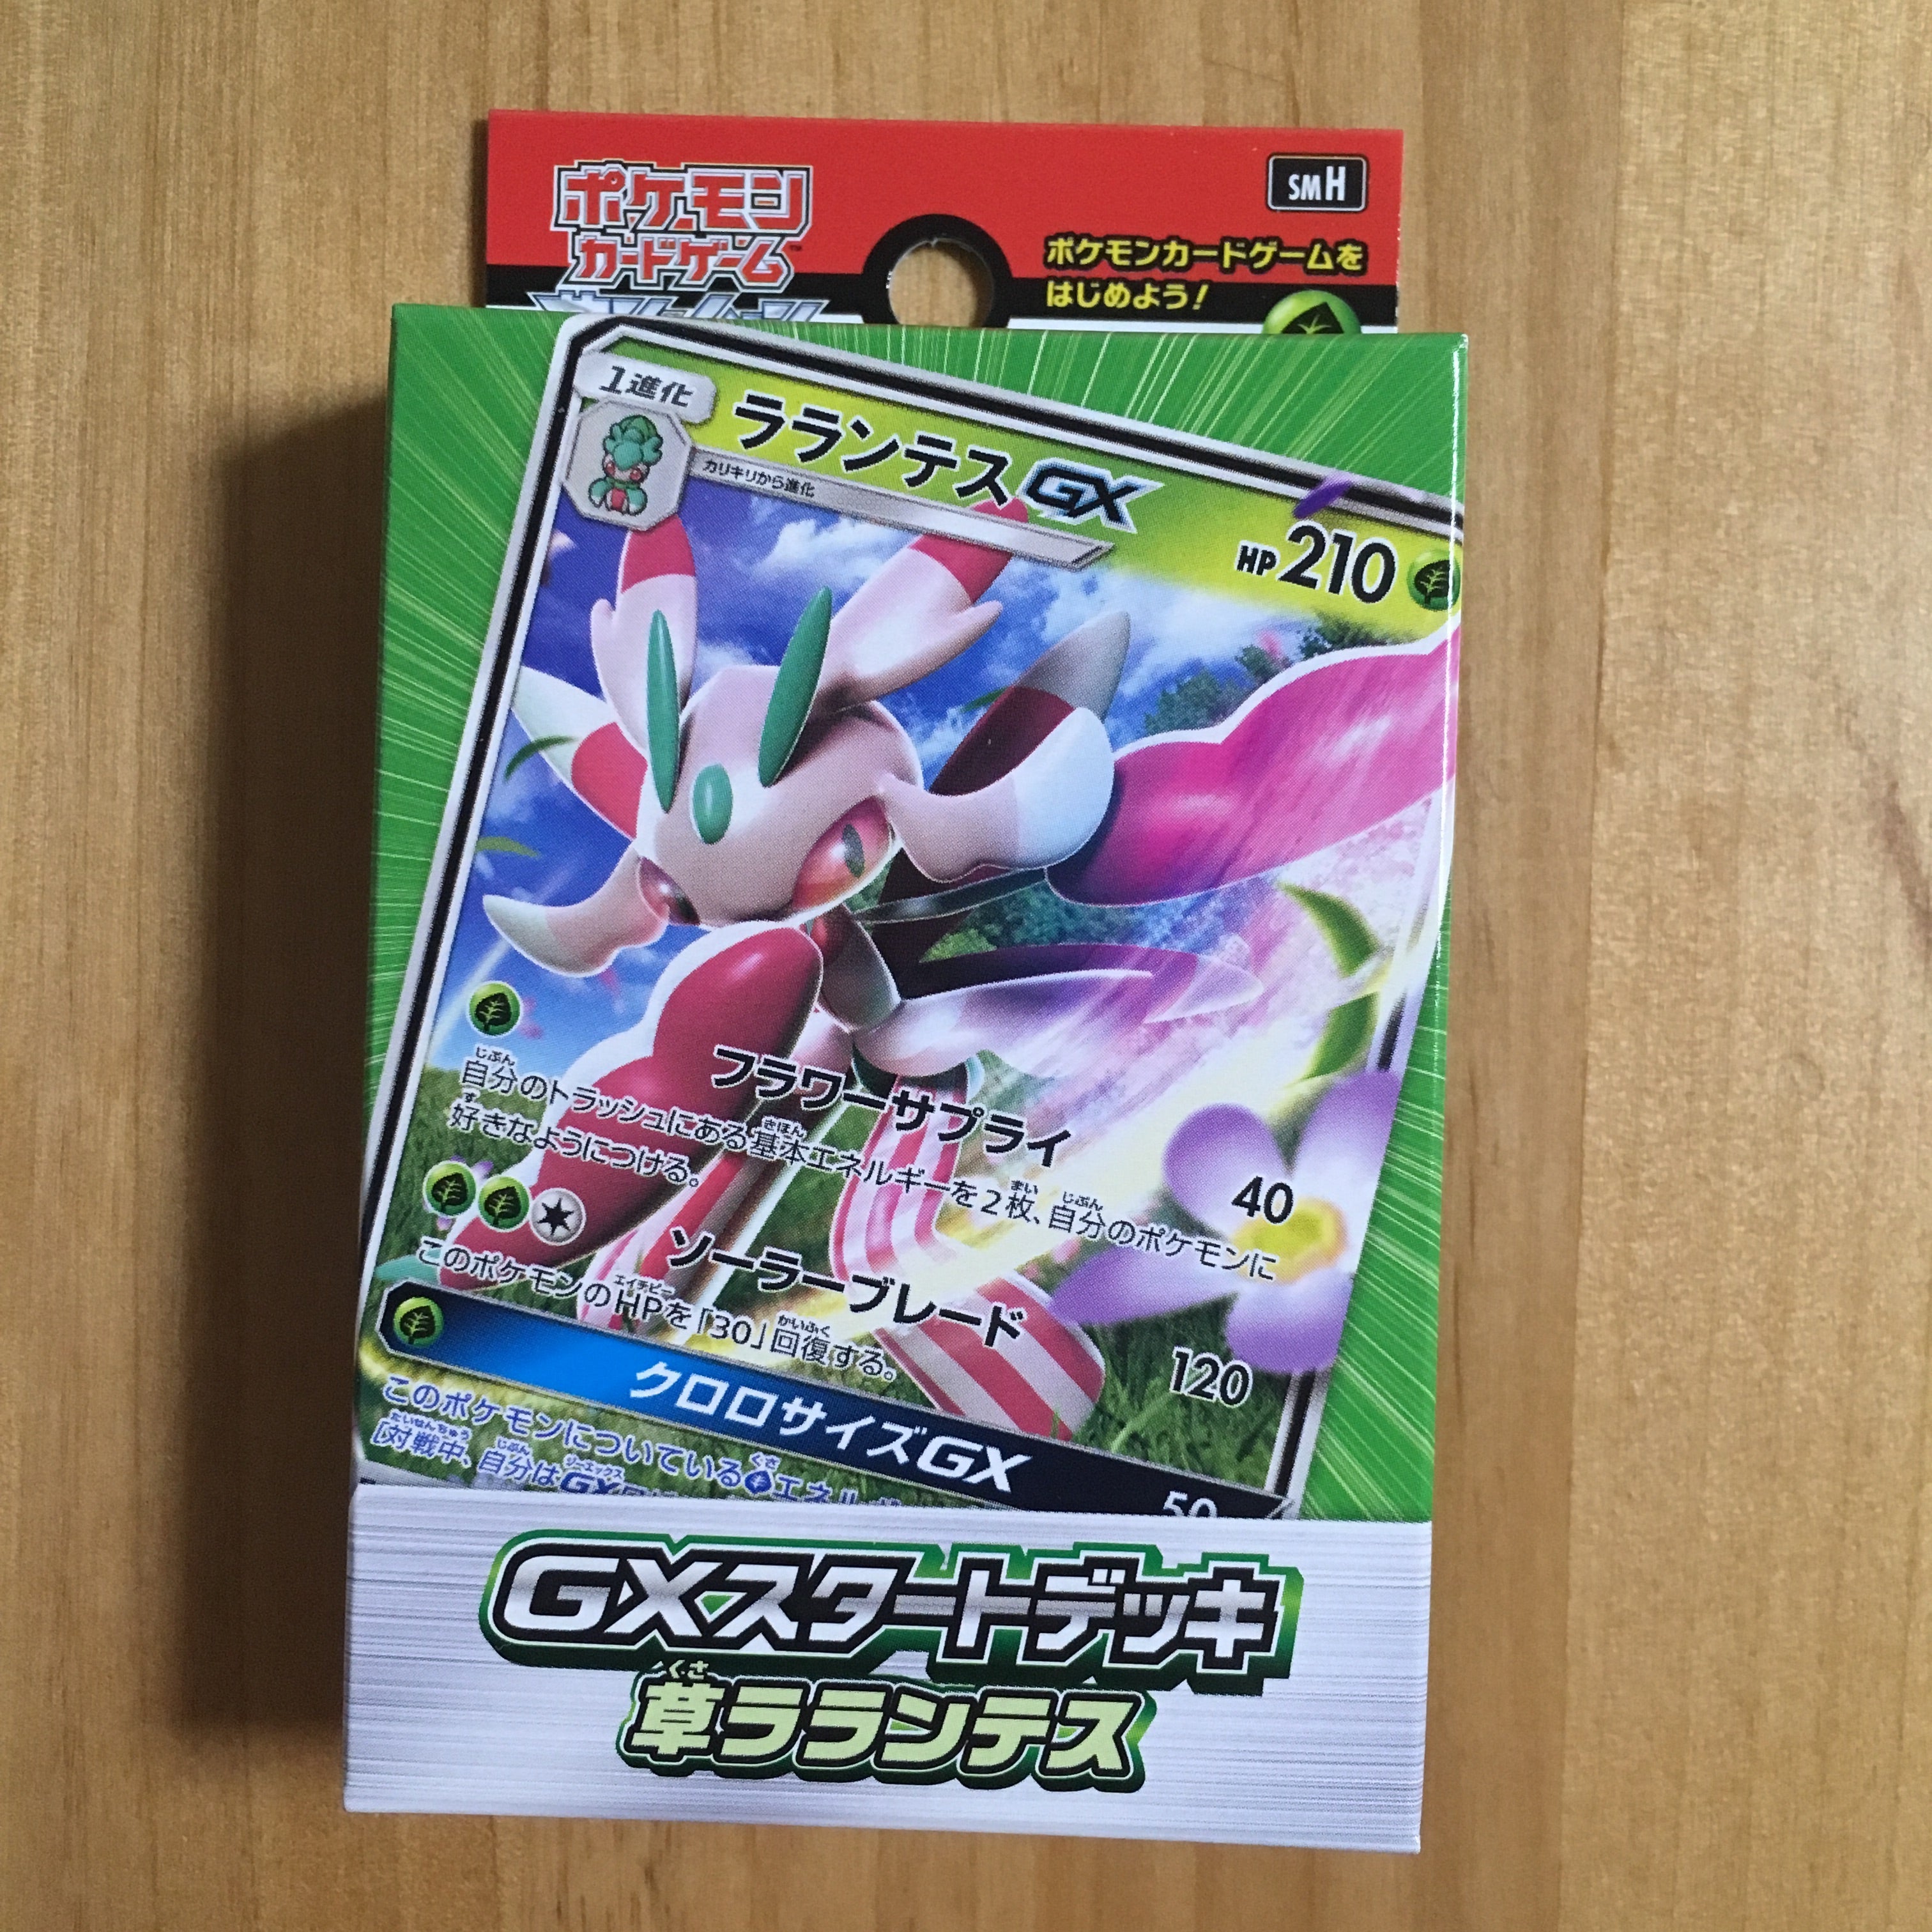 Pokémon card game Sun & Moon ｢GX Starter Deck kusa rarantesu｣